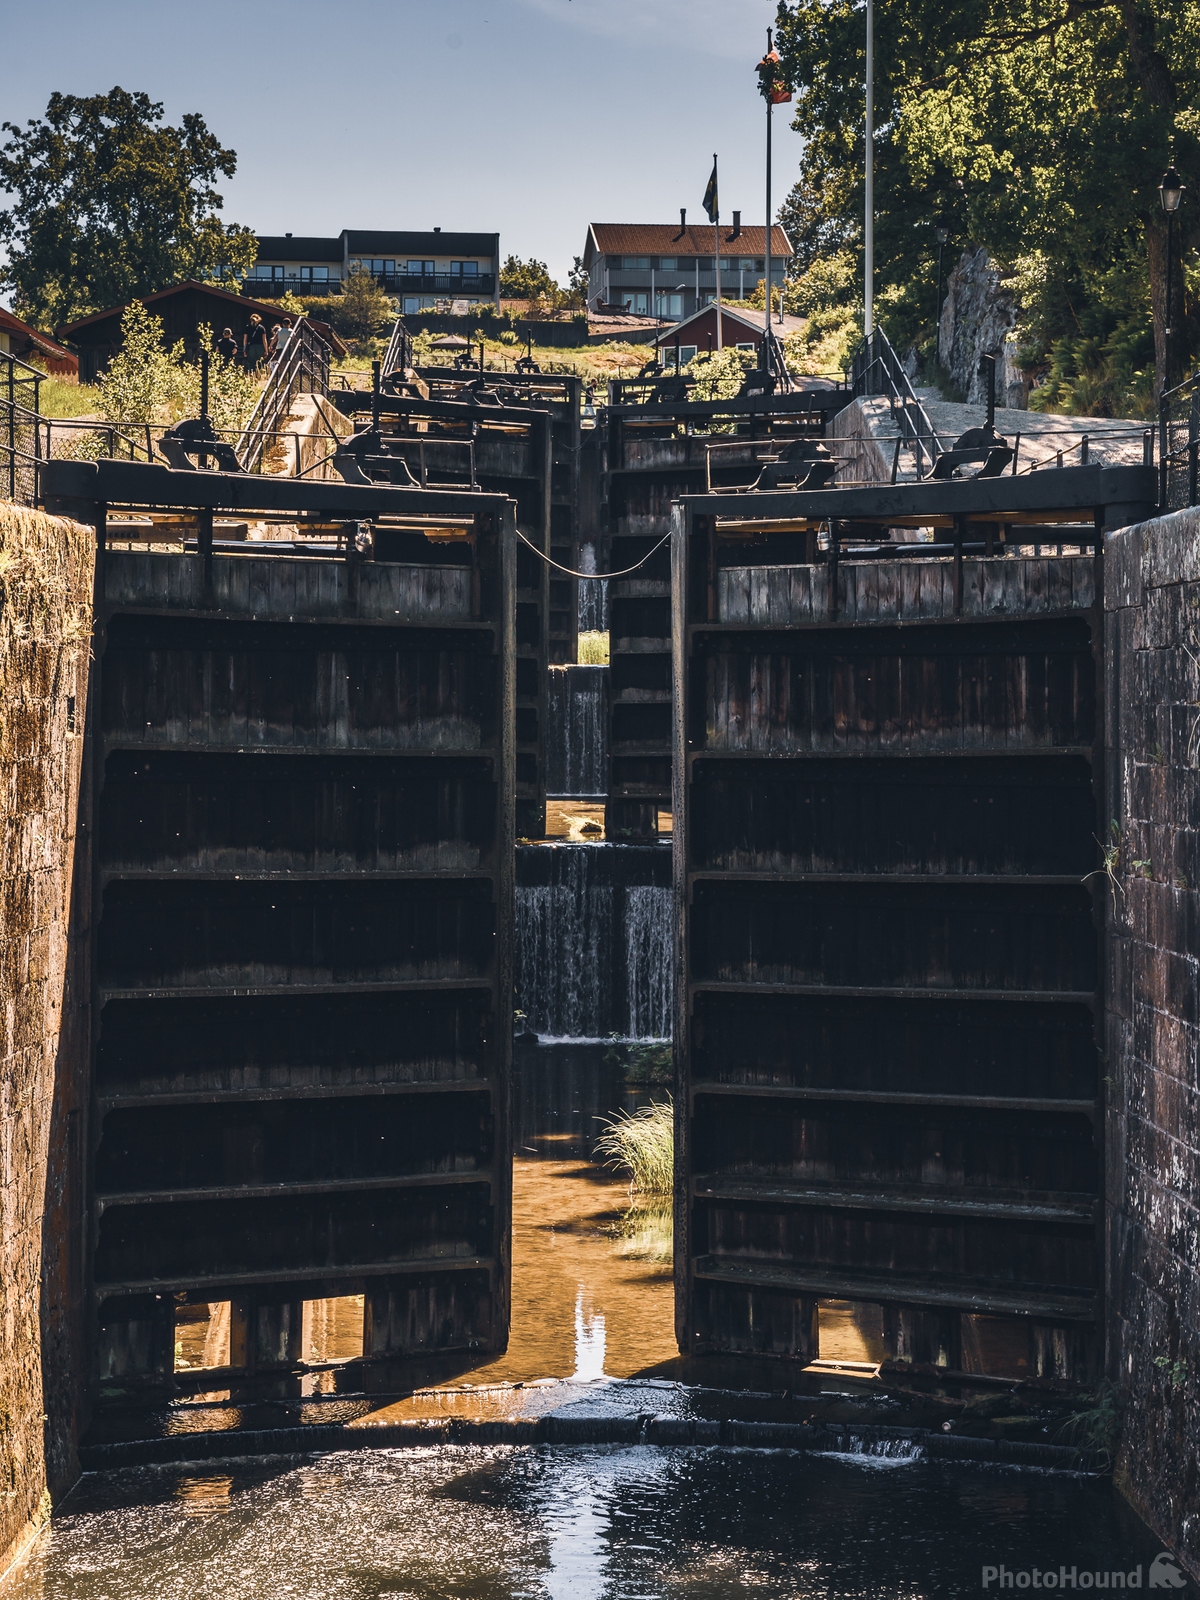 Image of Trollhättan - canal locks by James Billings.